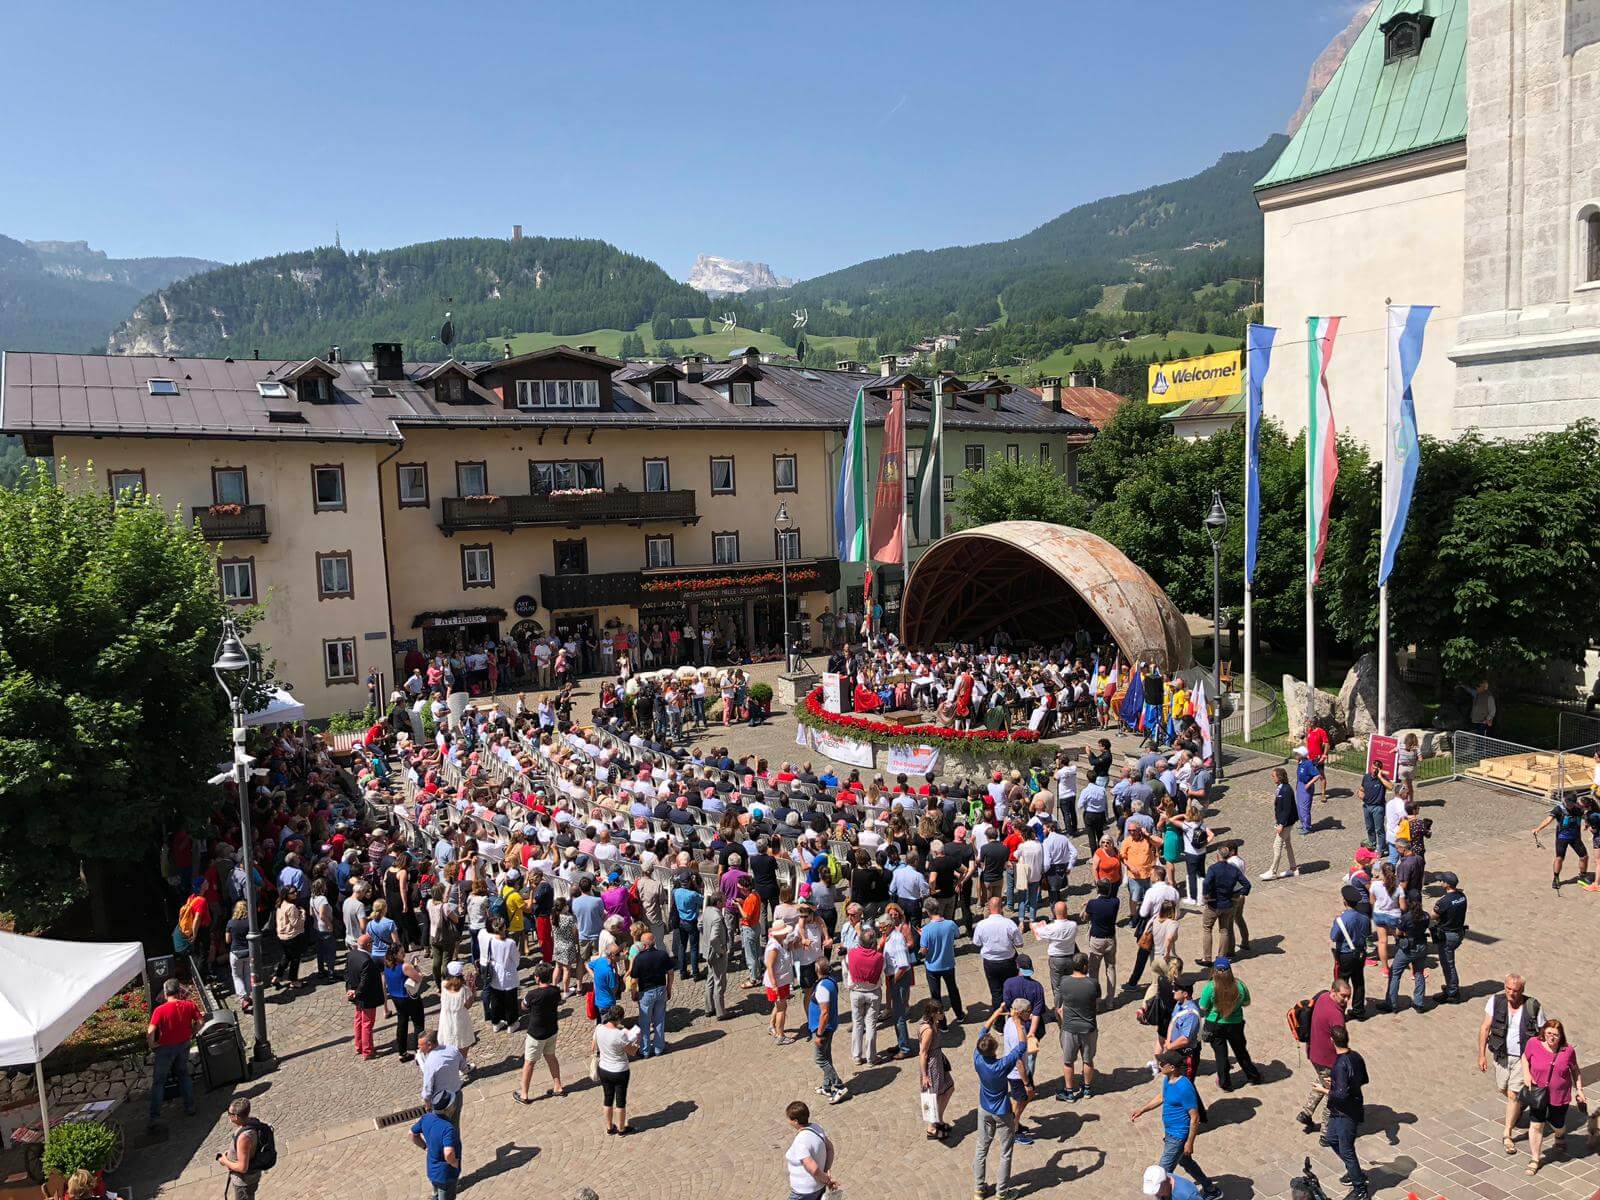 Dieci anni di Dolomiti UNESCO: da Cortina d’Ampezzo parte la festa